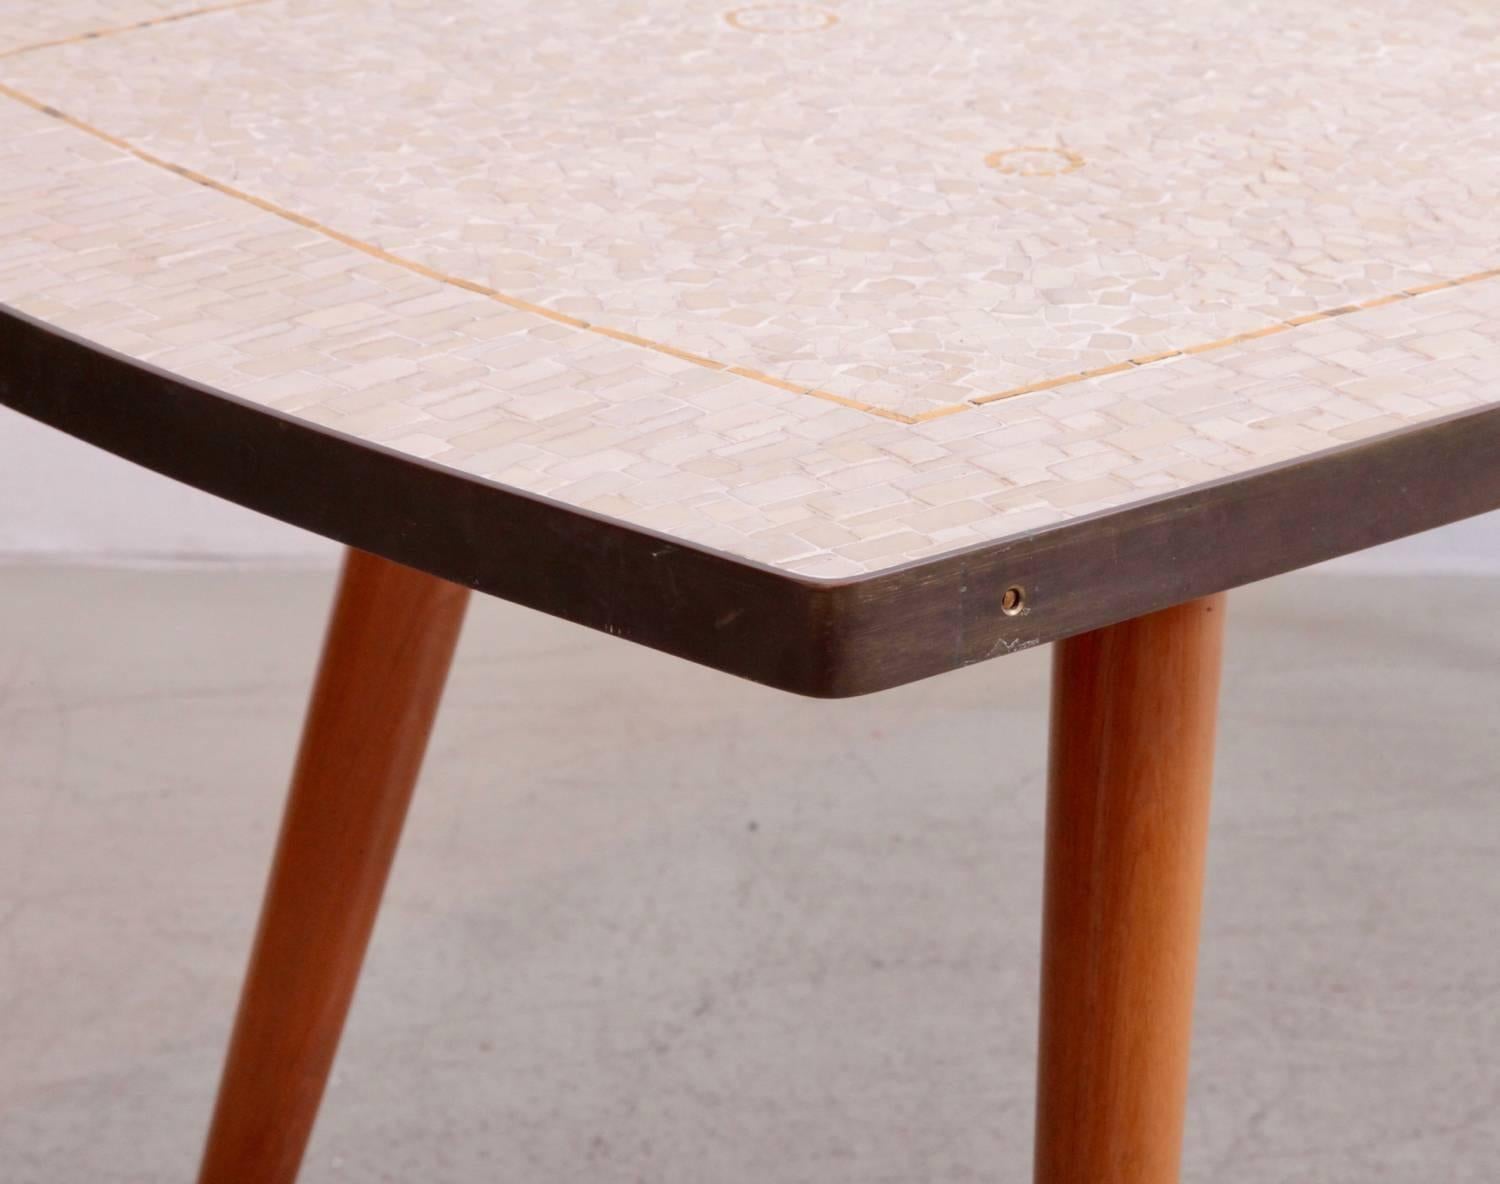 Magnifique table en mosaïque de Berthold Muller avec de rares éléments en or, des pieds en bois et en laiton et un très beau cadre en laiton patiné. Pas de chips !

